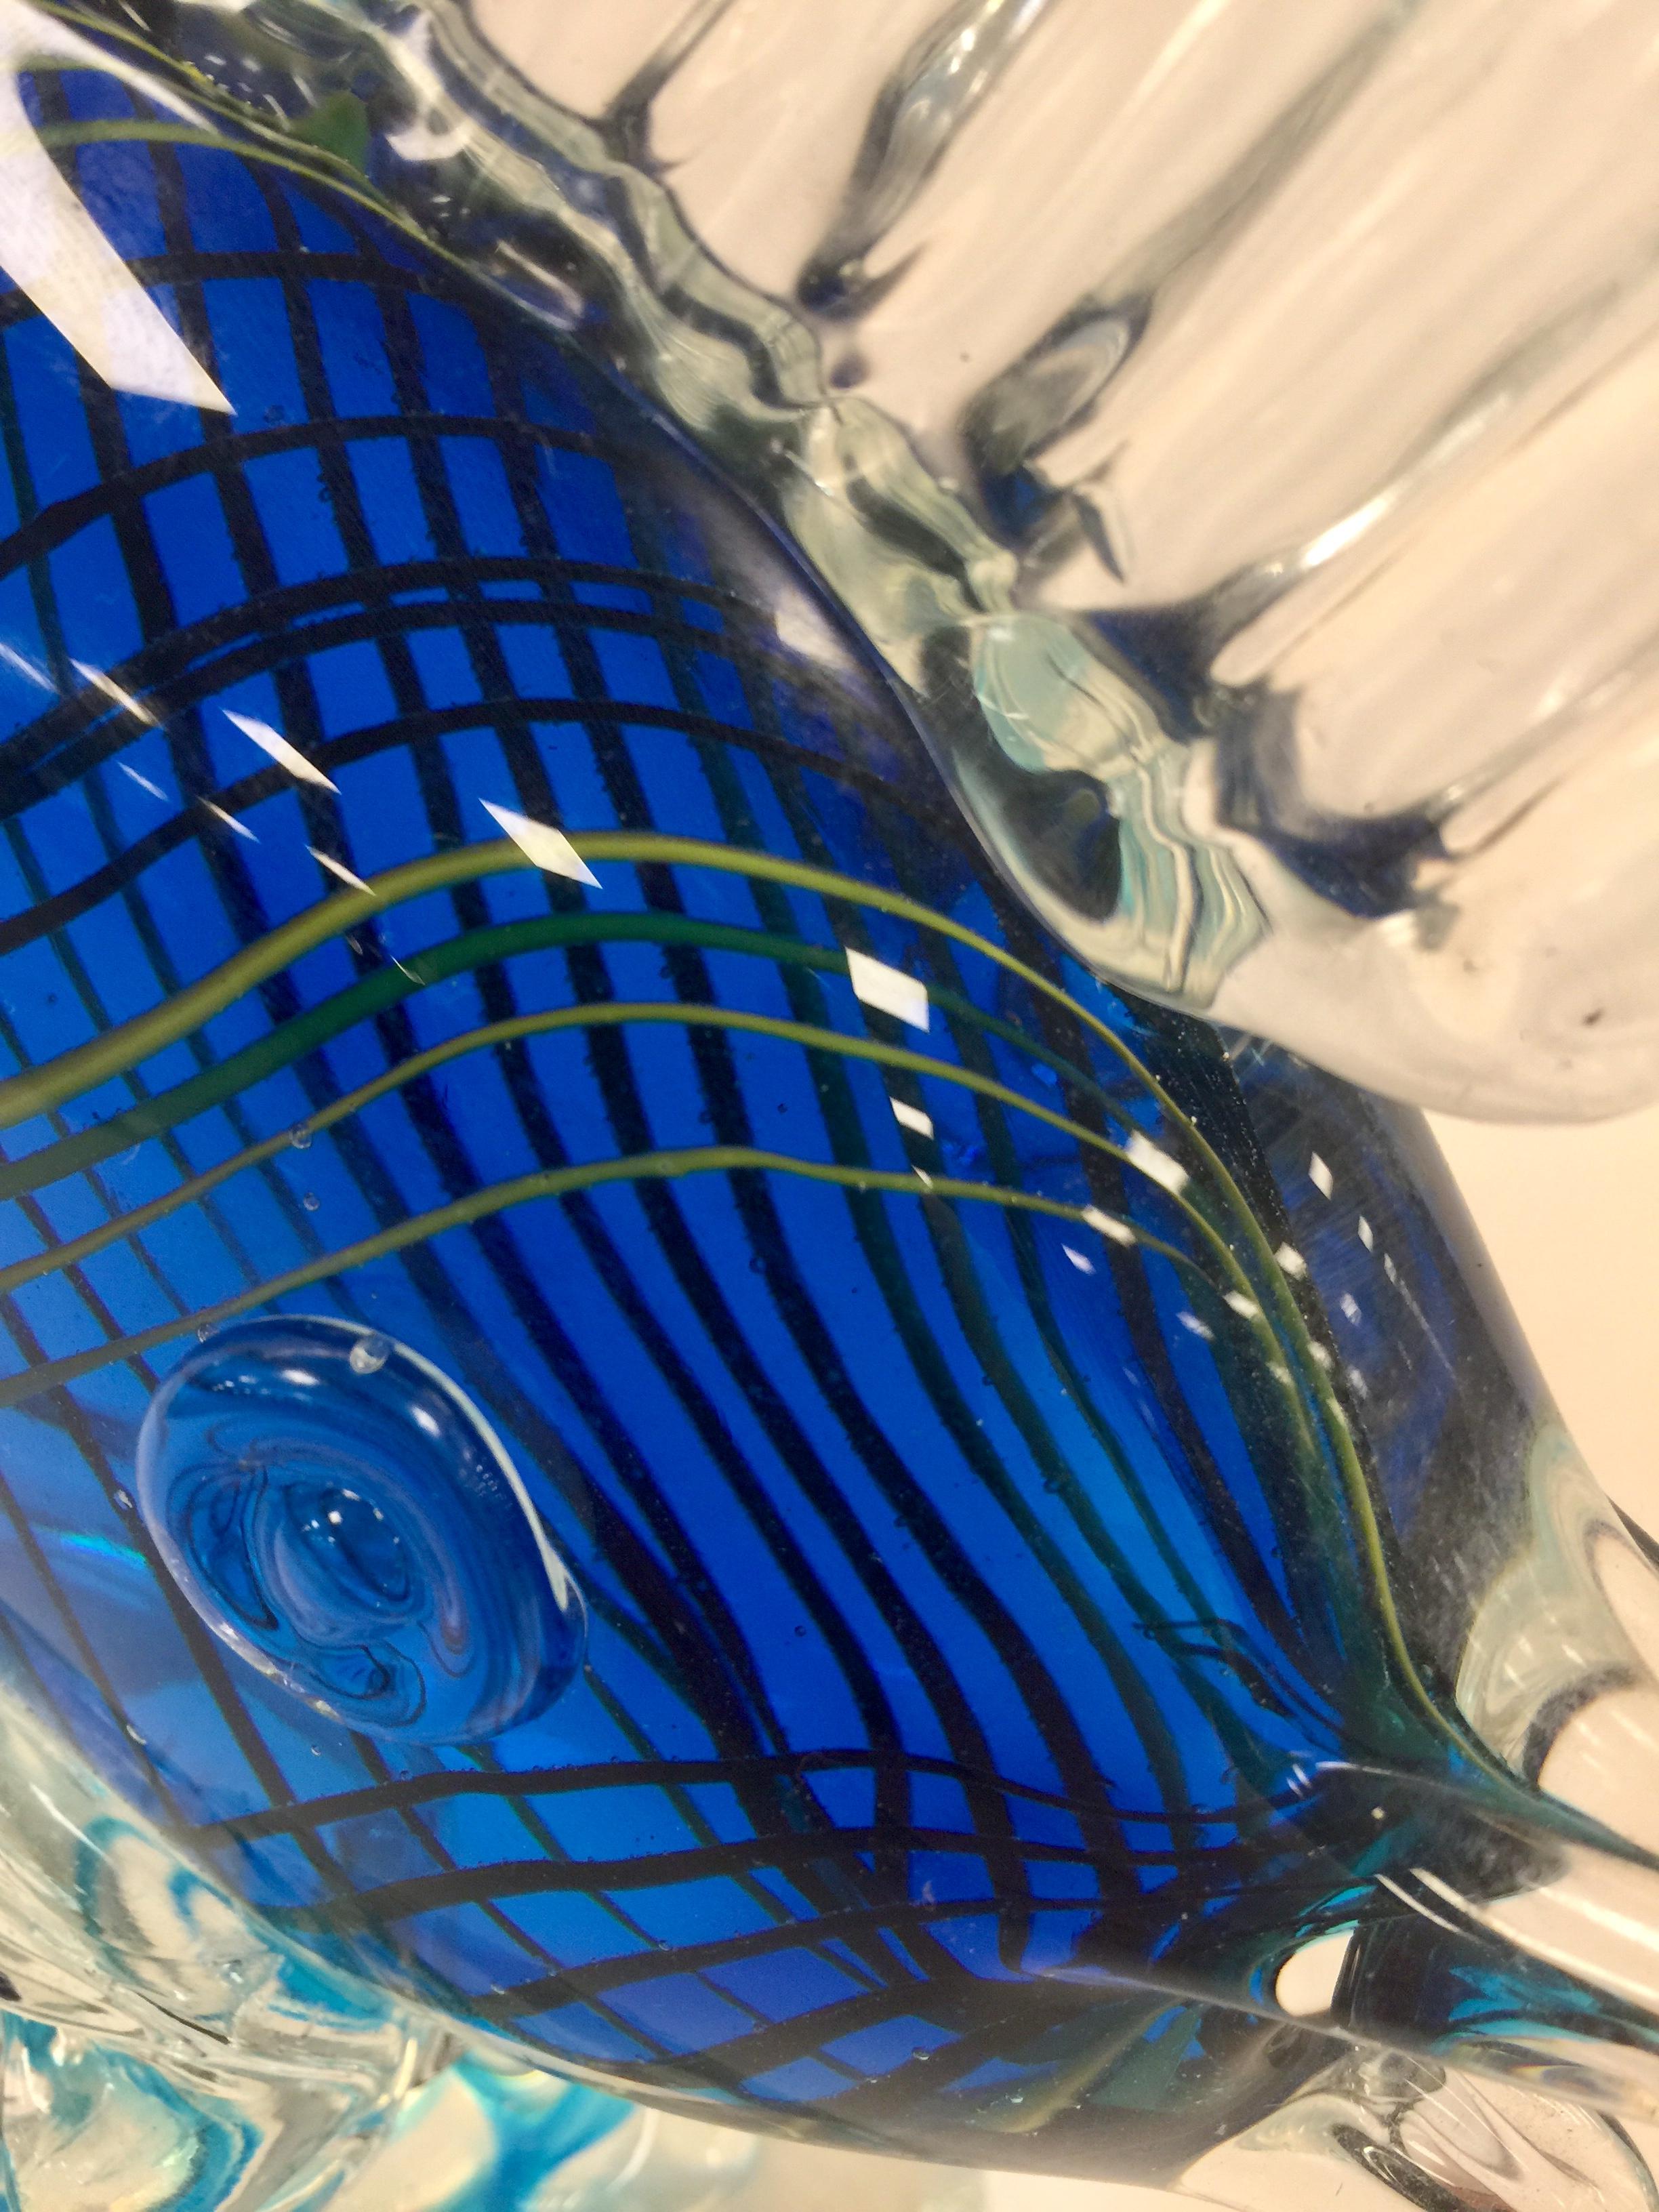 Albarelli 1950 multi-color fish in Murano glass with filigree.